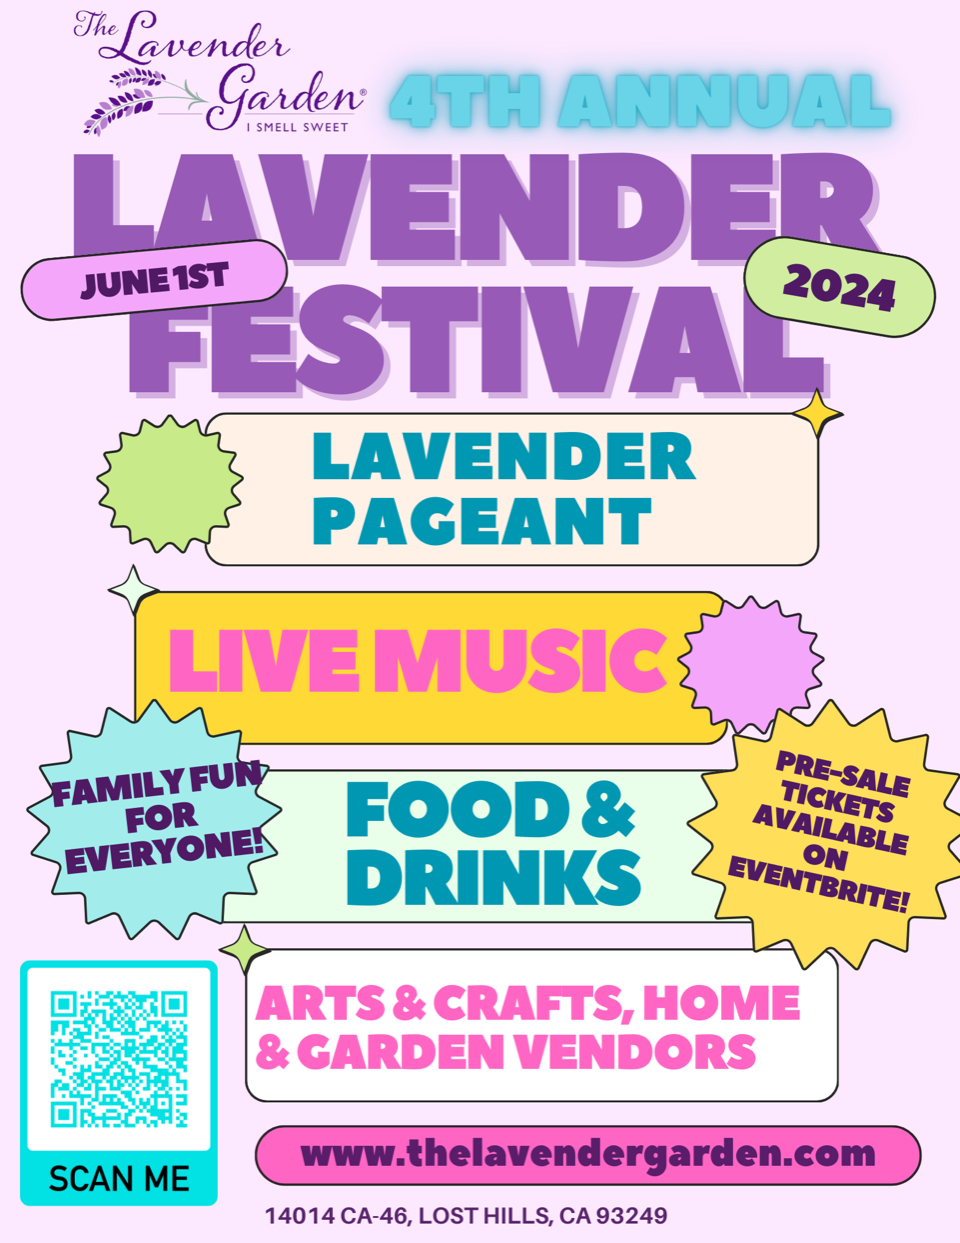 4th Annual Lavender Garden Festival June 1, 2024 Flyer